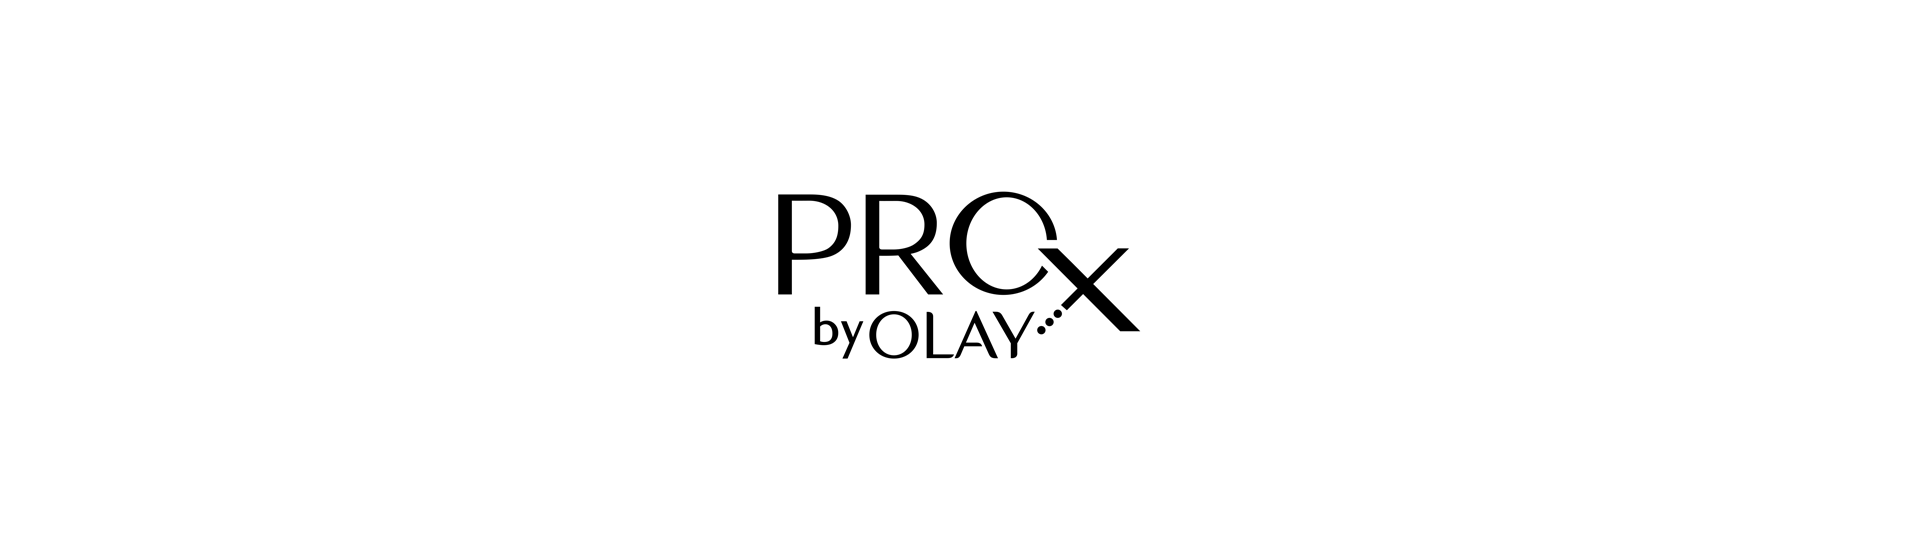 OLAY ProX on Behance38b8fa93164623.5e5e16ce4e17d.png